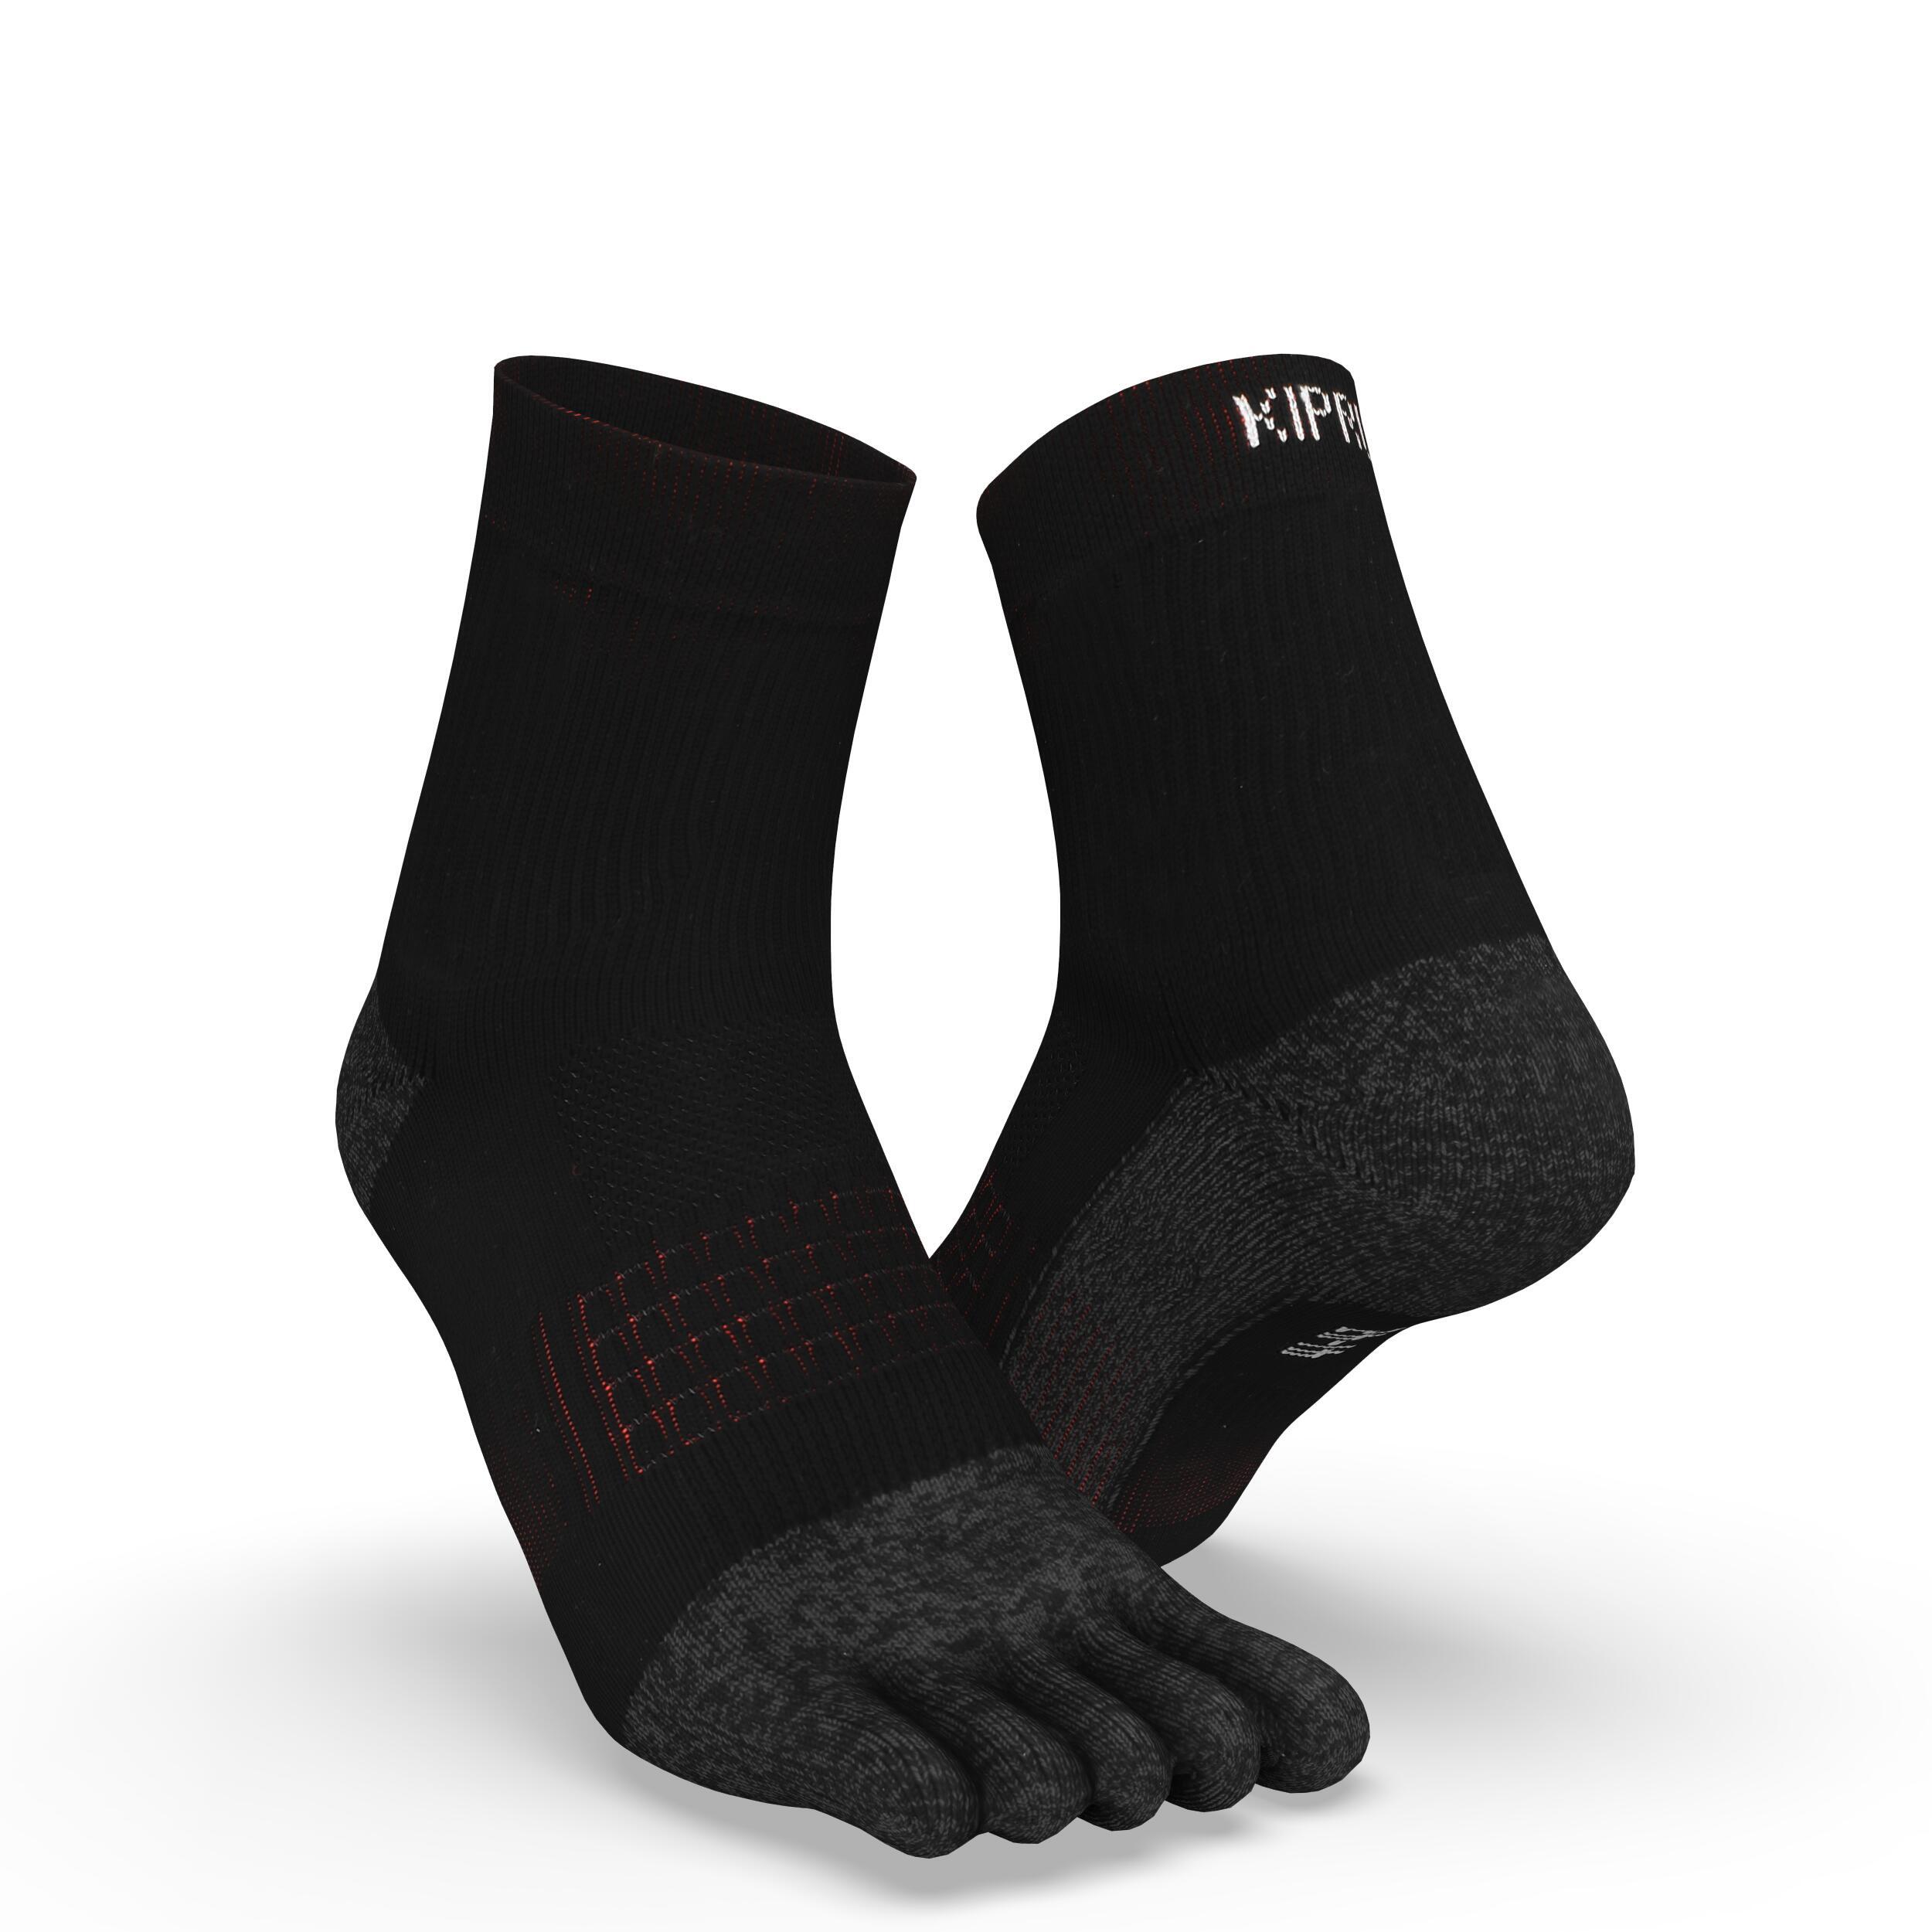 KIPRUN Run900 5-Finger Socks - Black/Red